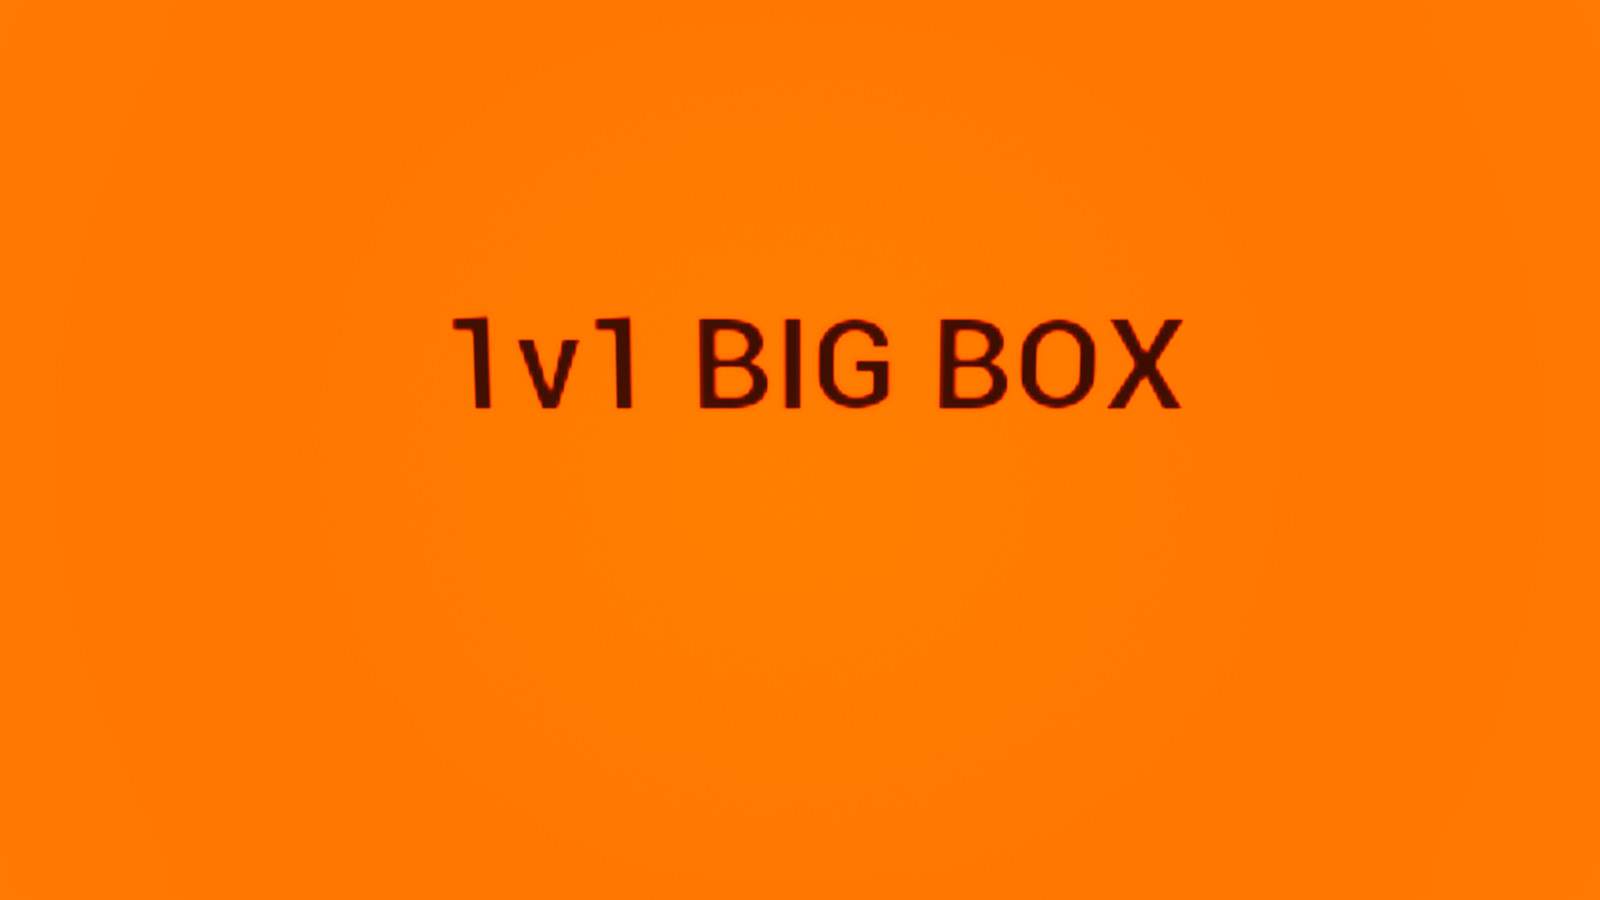 1V1 BIG BOX